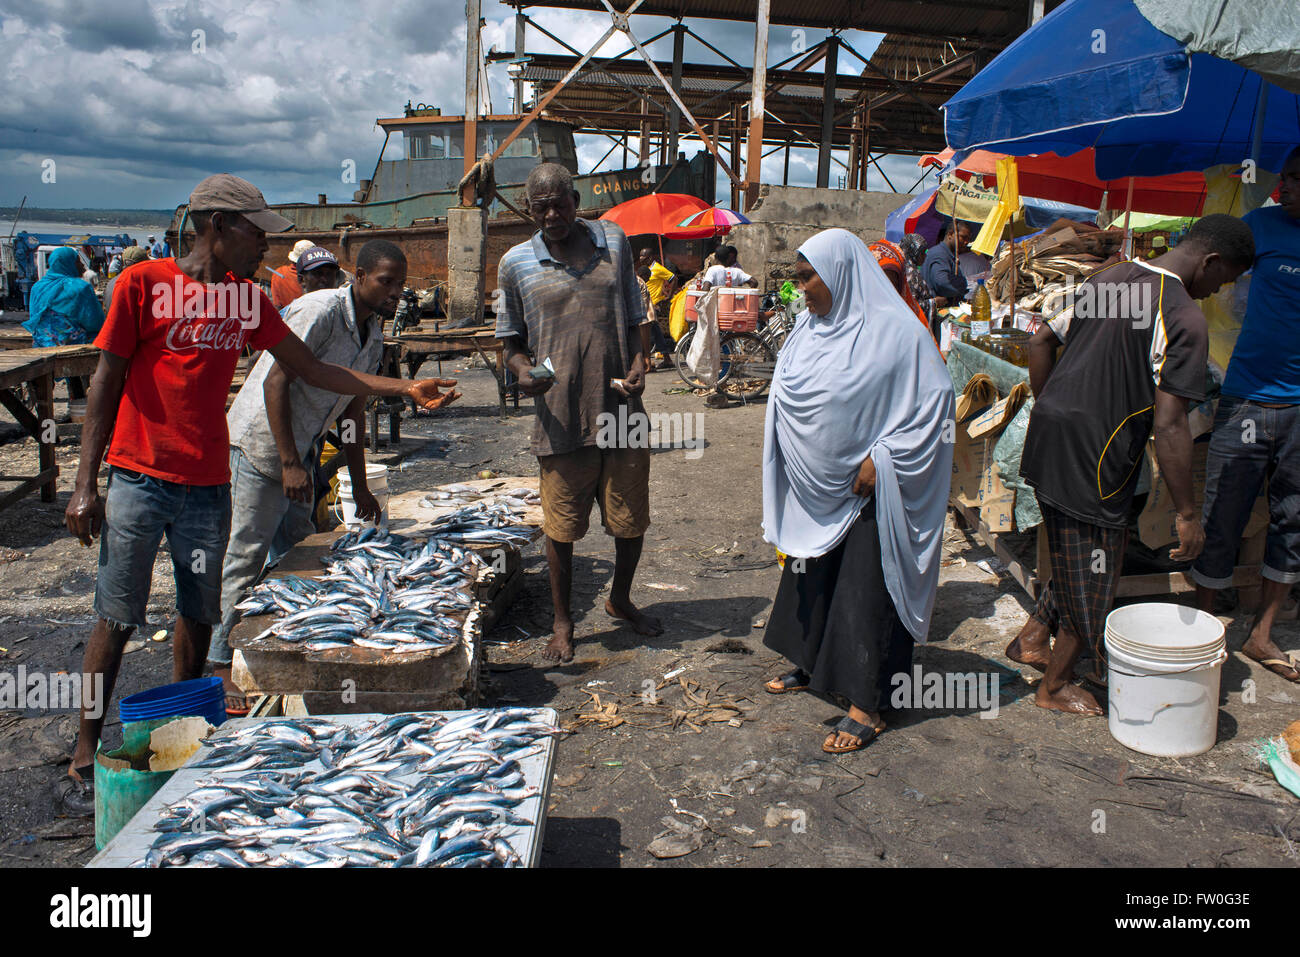 Fischmarkt am alten Dhau-Hafen, Händlern und Kunden, Segler werden immer geladen, Malindi, Stone Town, Sansibar, Tansania Stockfoto